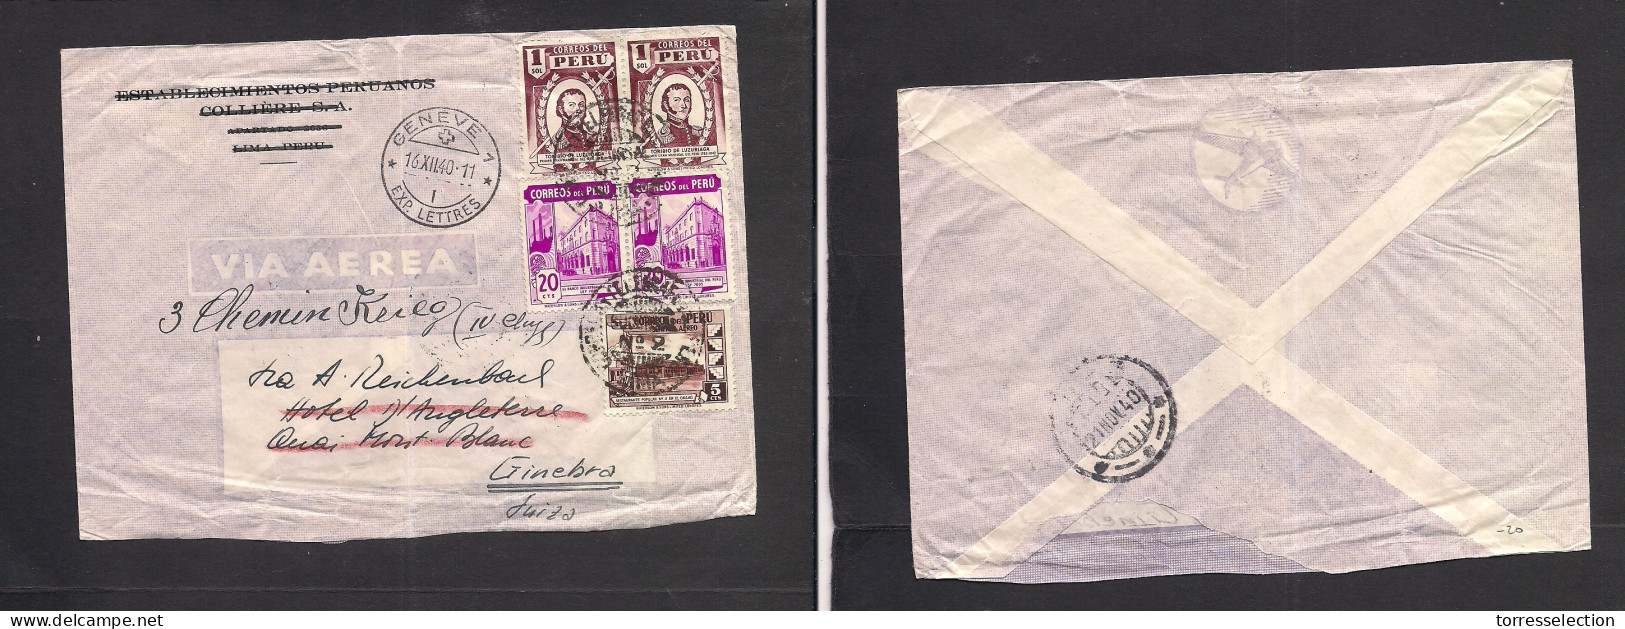 PERU. 1940. Lima Suc 2 - Switzerland, Geneva (16 Dec) Air Multifkd Envelope, Fwded 2,45 Soles Rate. - Perú